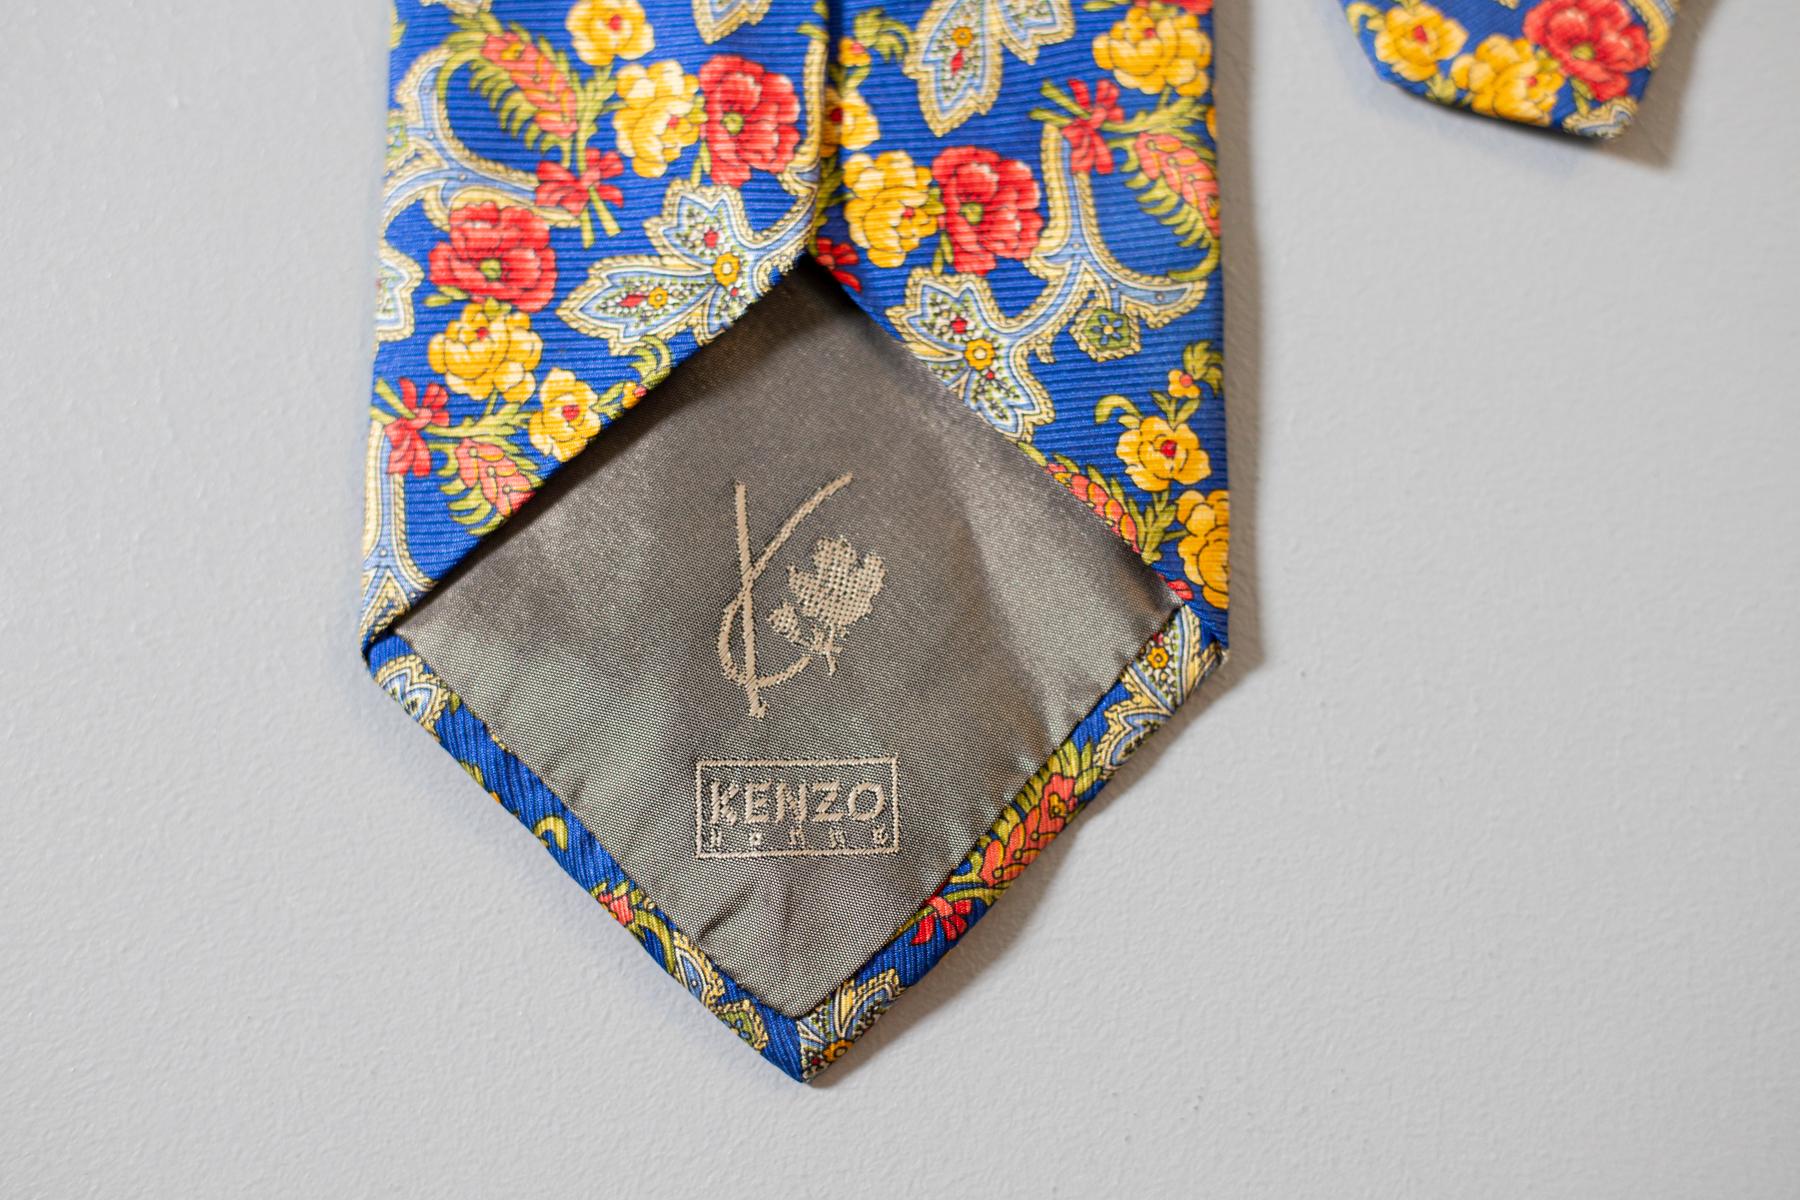 Diese Vintage-Krawatte wurde von Kenzo für seine Kollektion Kenzo Homme entworfen. Diese Krawatte aus reiner Seide ist farbenfroh: Sie zeigt bunte Blumen auf blauem Grund. Einzigartig und originell, perfekt für einen eleganten Anlass.